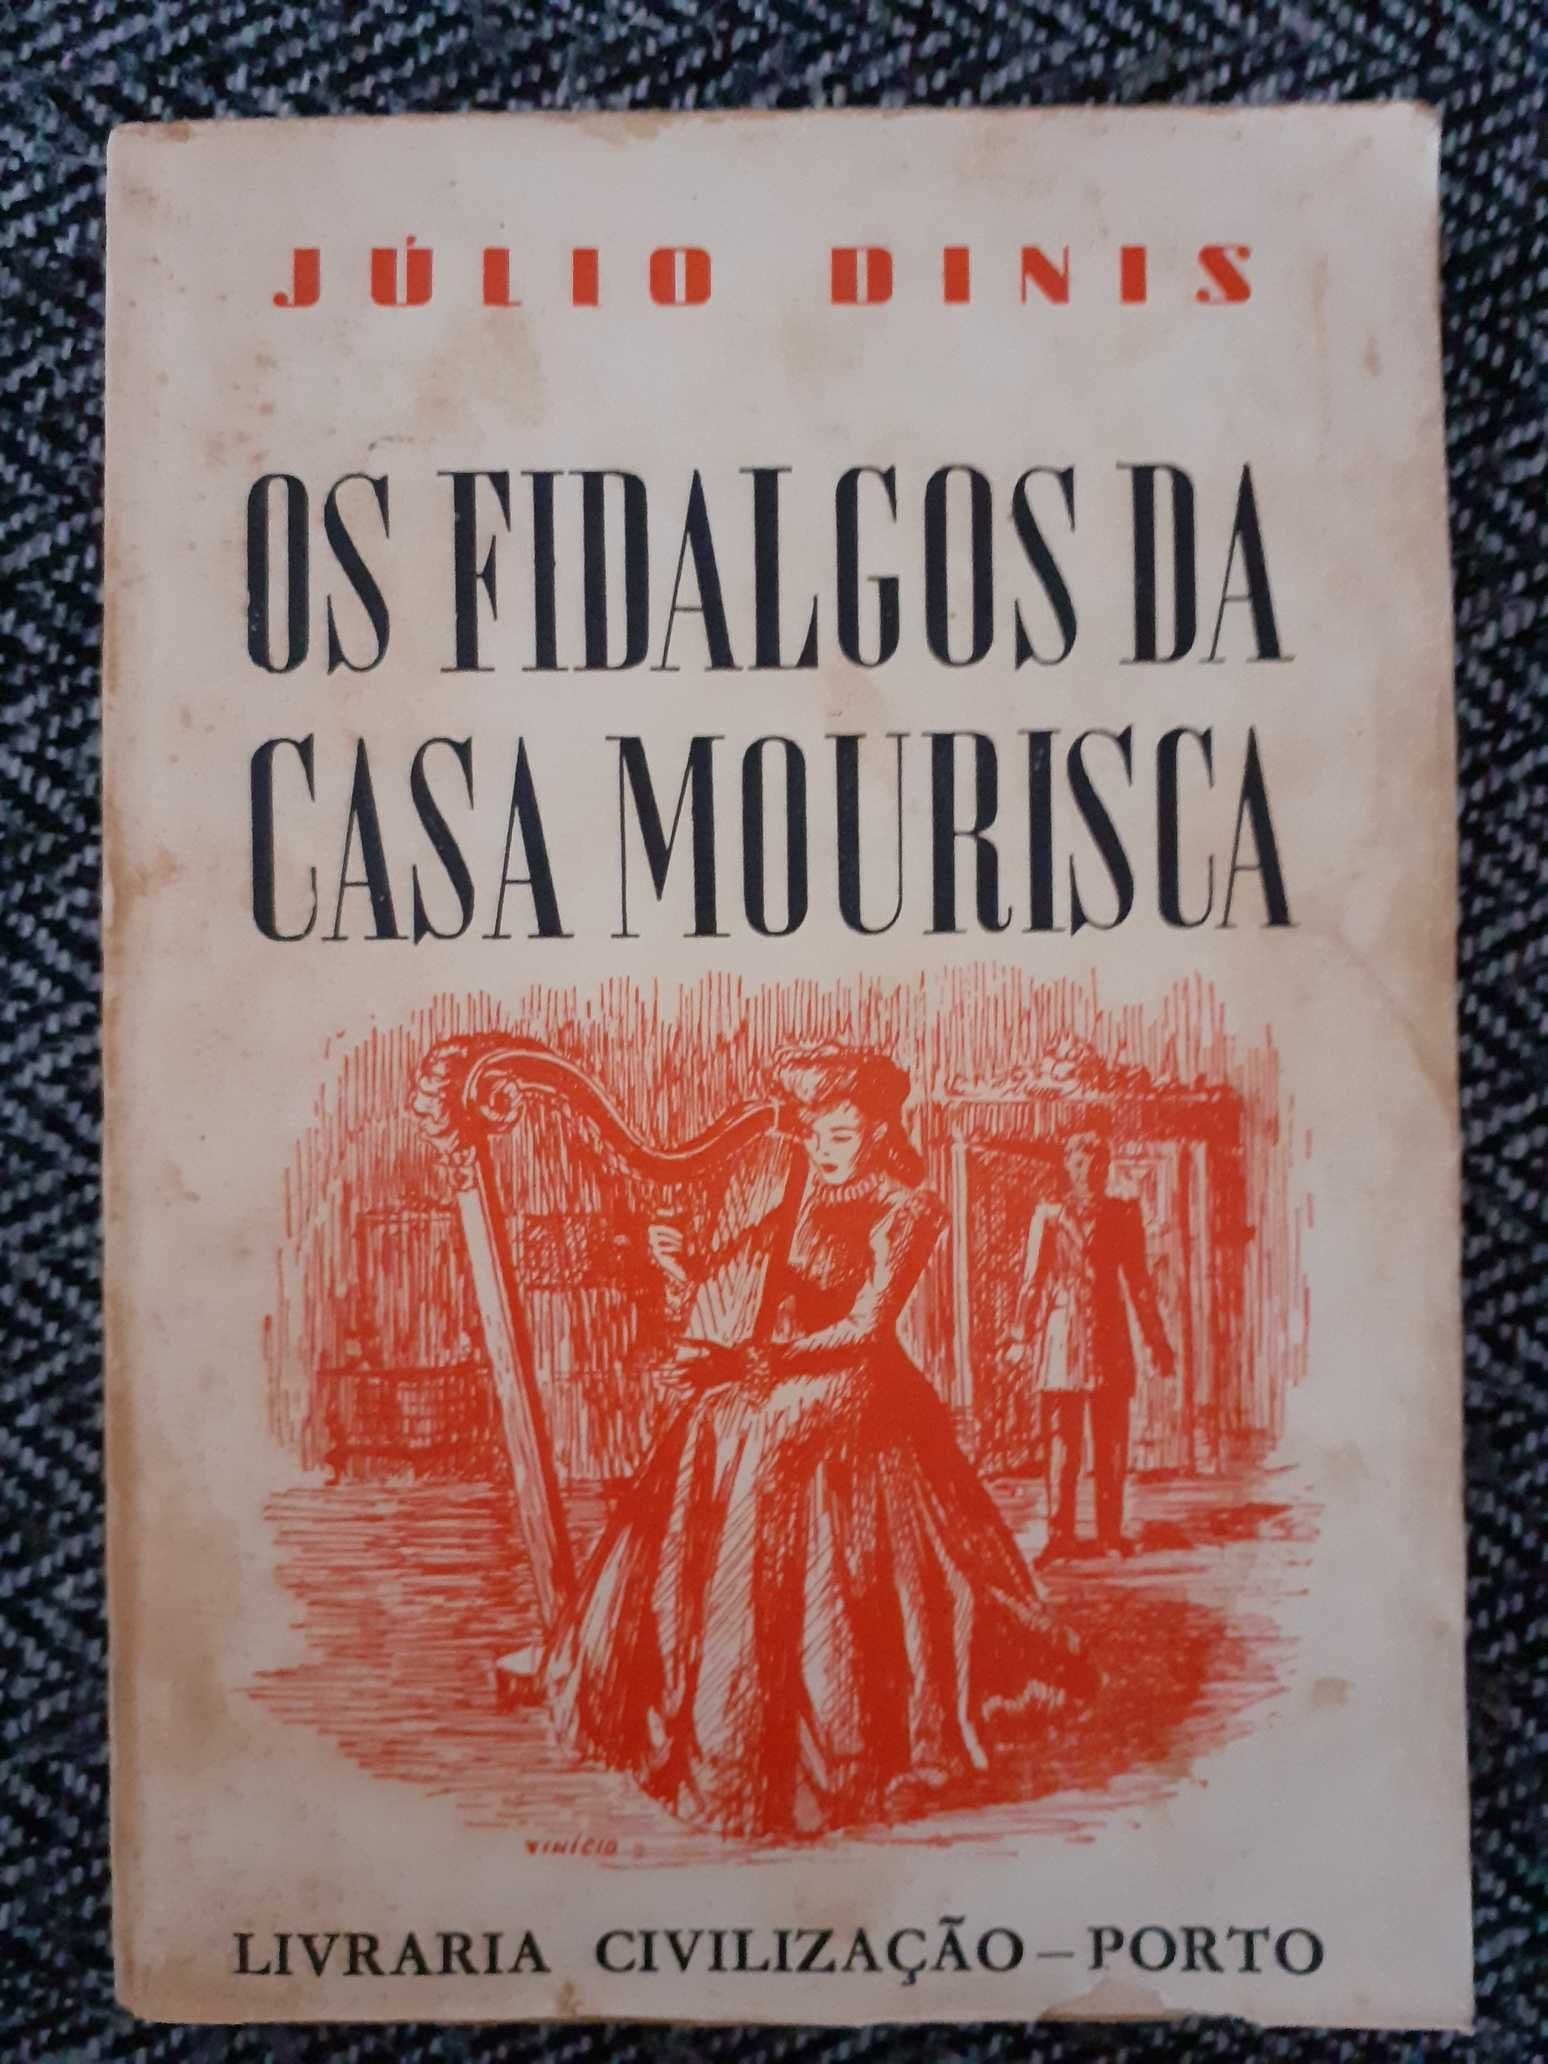 Os Fidalgos da Casa Mourisca, 1961- Júlio Dinis - PORTES GRÁTIS